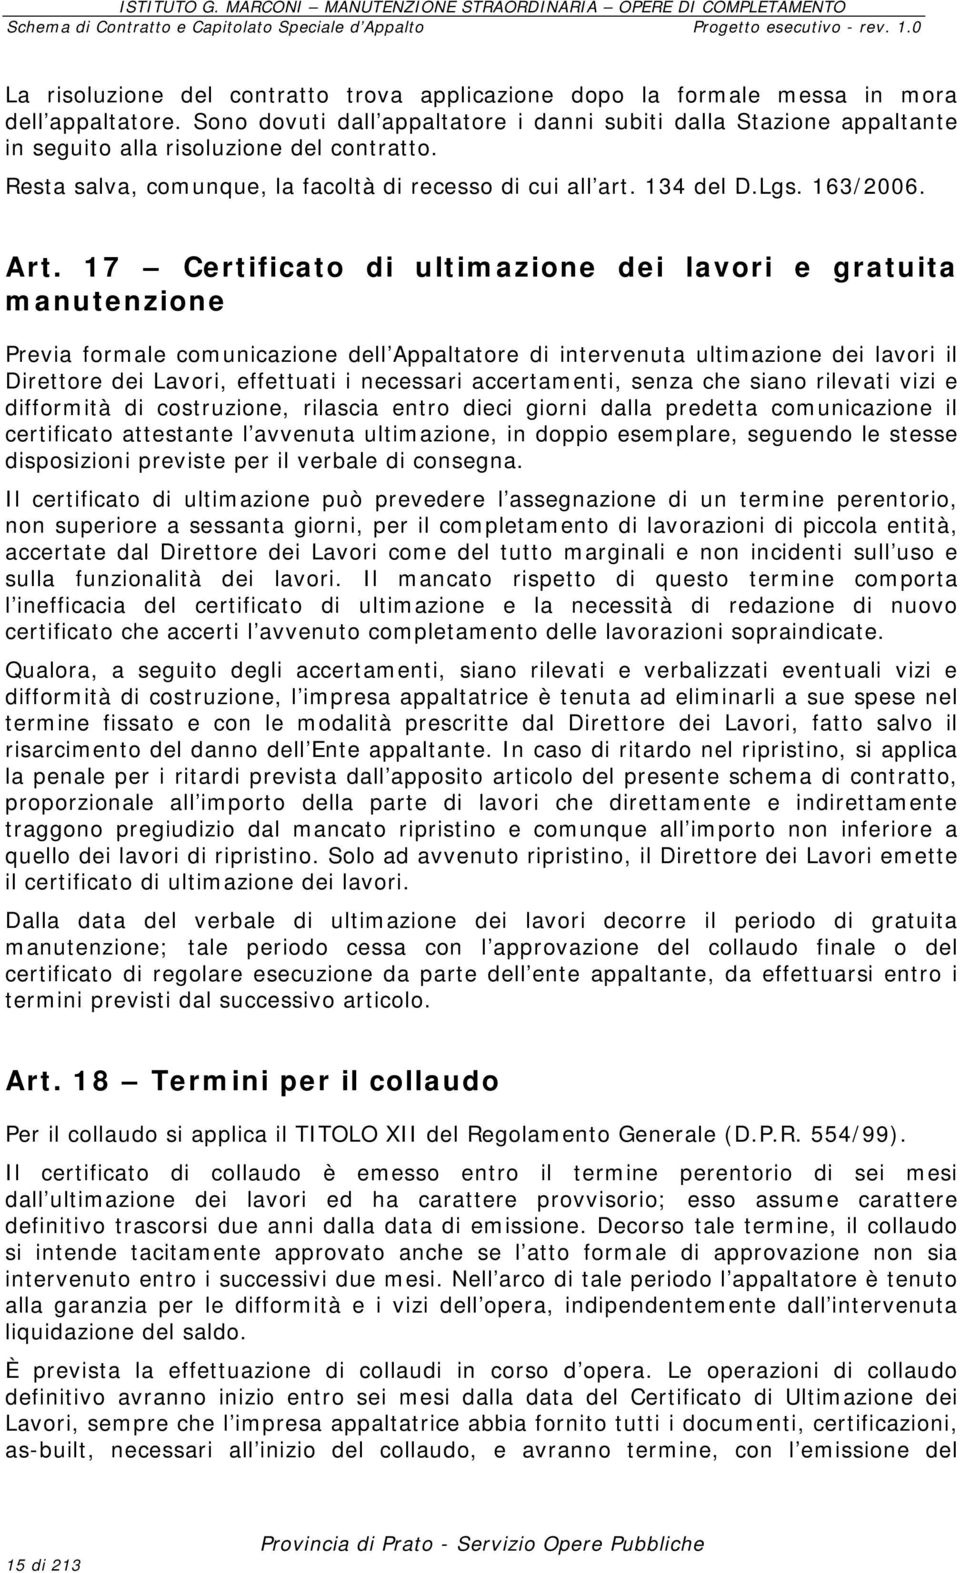 Art. 17 Certificato di ultimazione dei lavori e gratuita manutenzione Previa formale comunicazione dell Appaltatore di intervenuta ultimazione dei lavori il Direttore dei Lavori, effettuati i